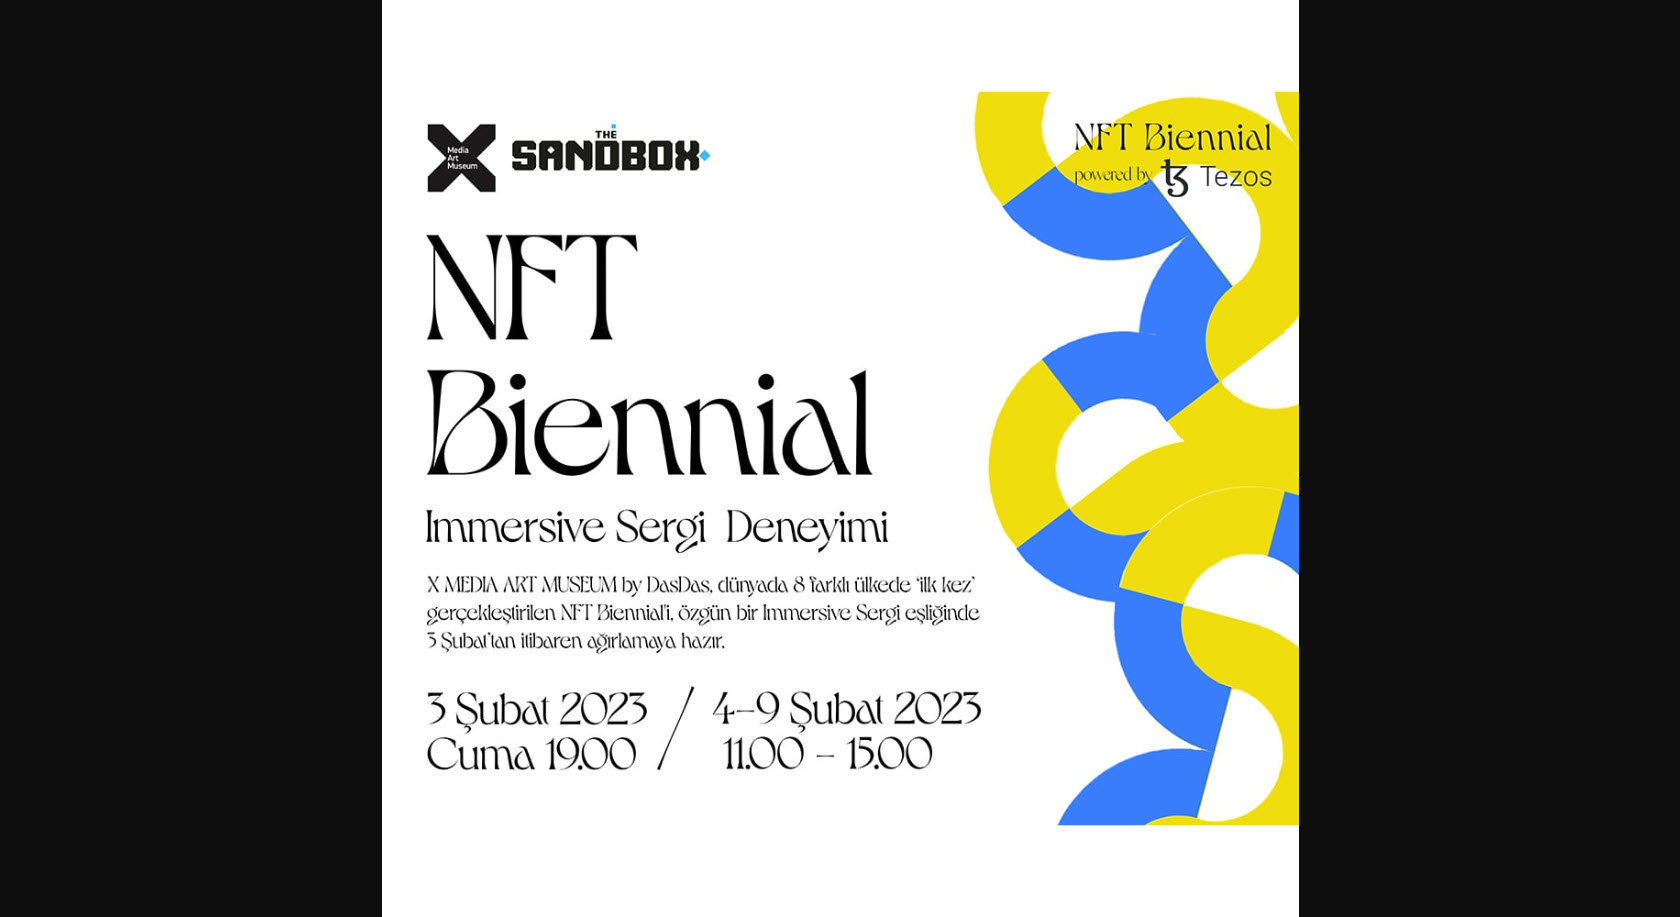 NFT Biennial / X MEDIA ART MUSEUM